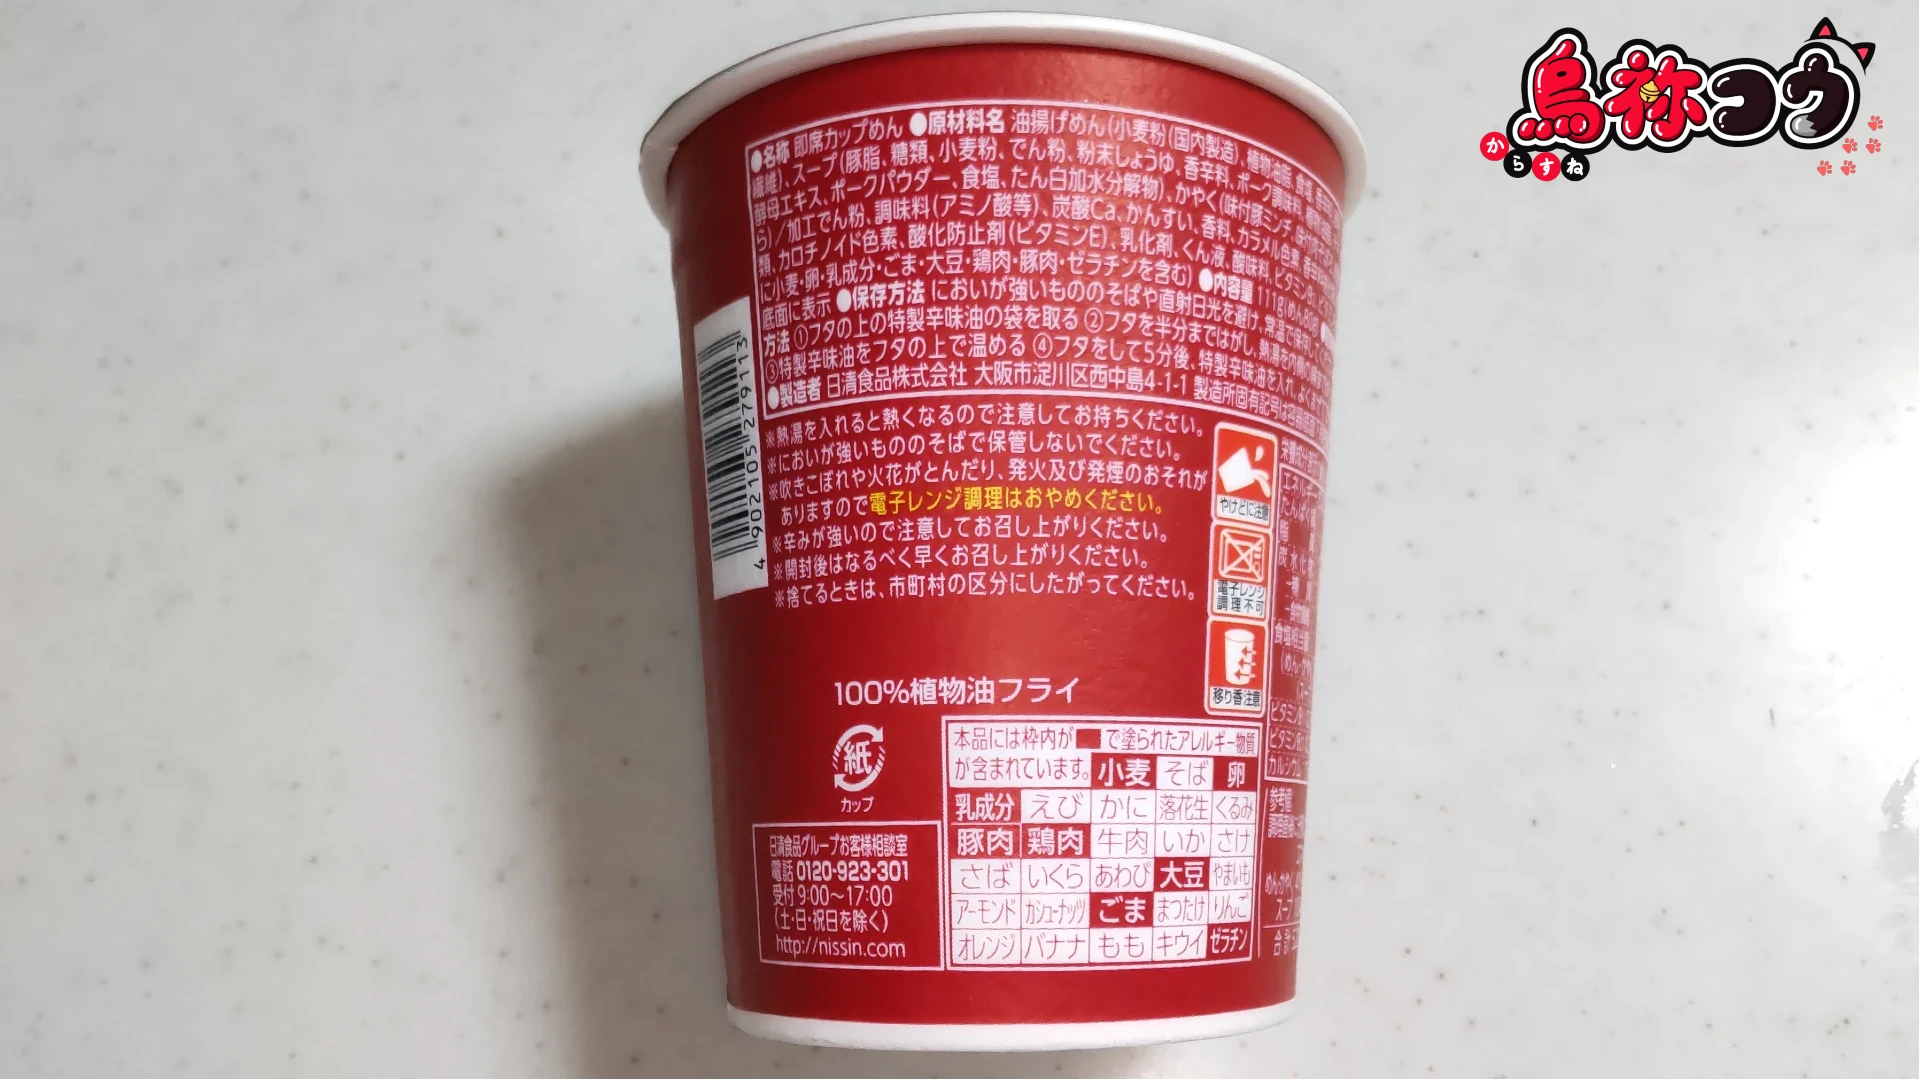 ファミマルの味仙 台湾ラーメンの裏面の原材料名などの表示です